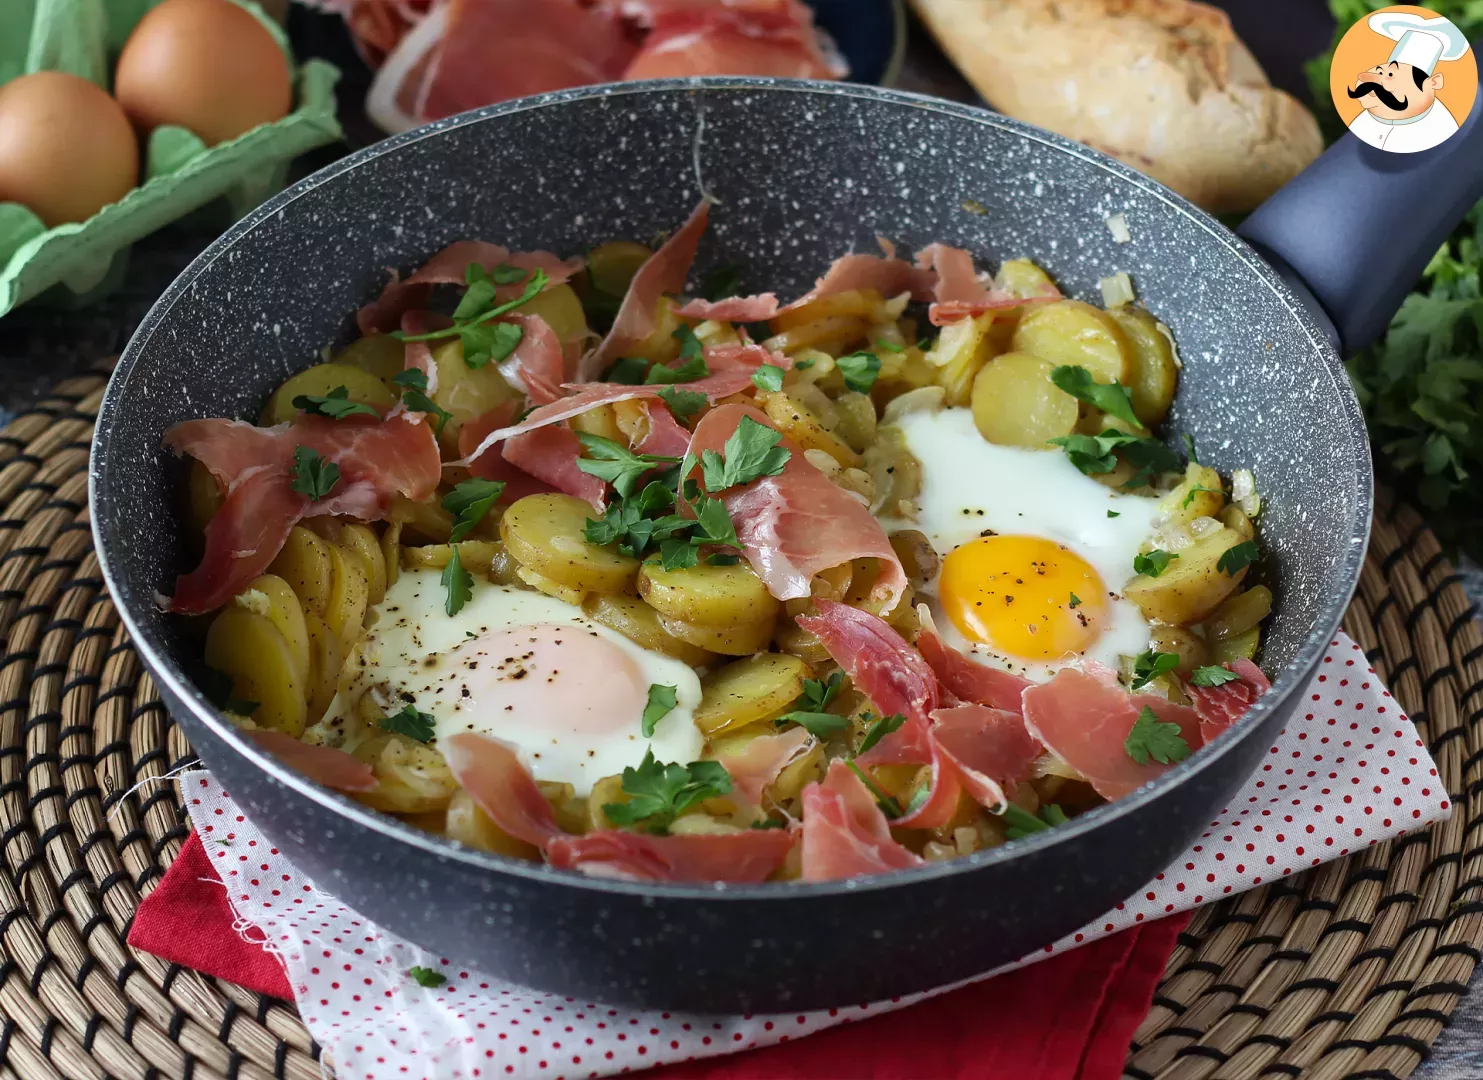 Huevos rotos, la recette espagnole super facile à faire à base de pommes de terre et d’œufs